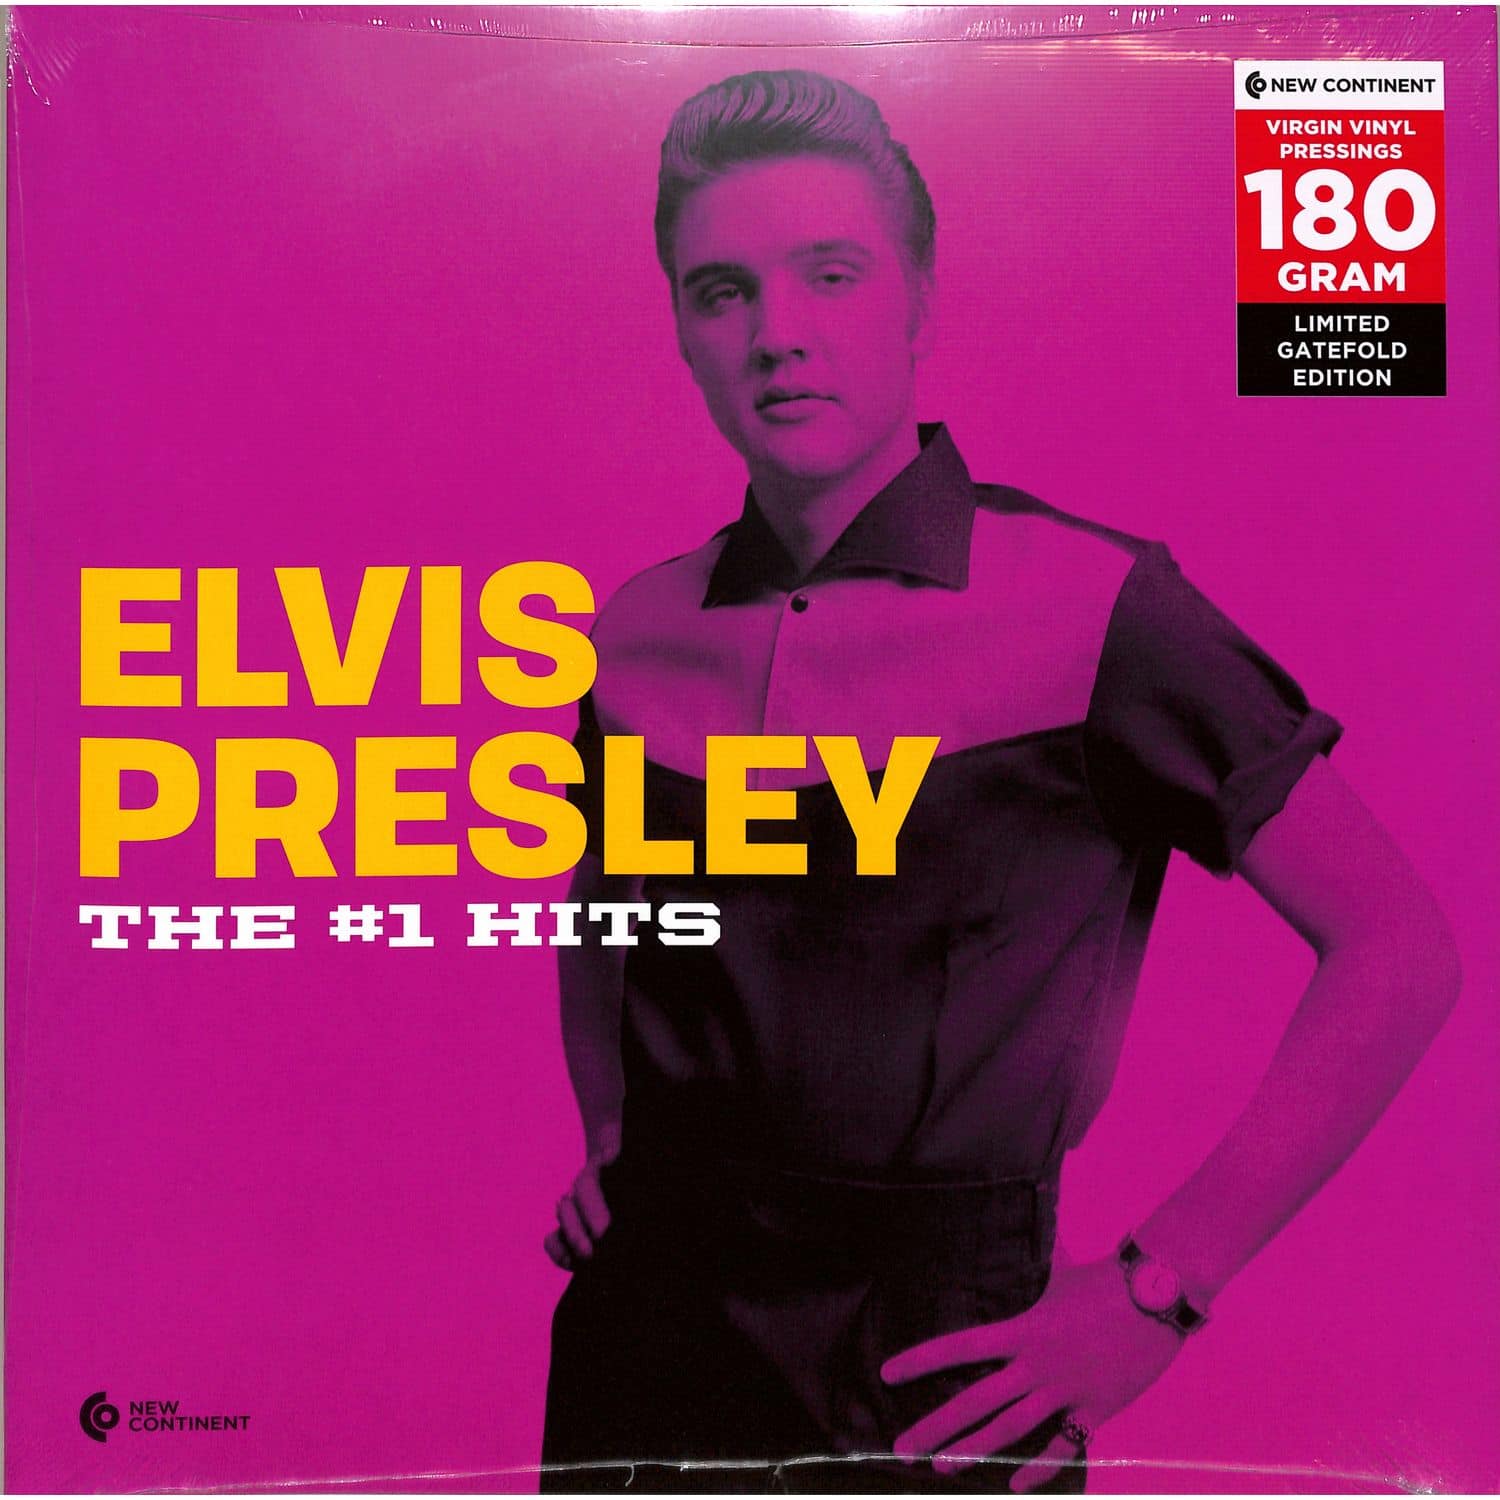 Elvis Presley - 1 HITS